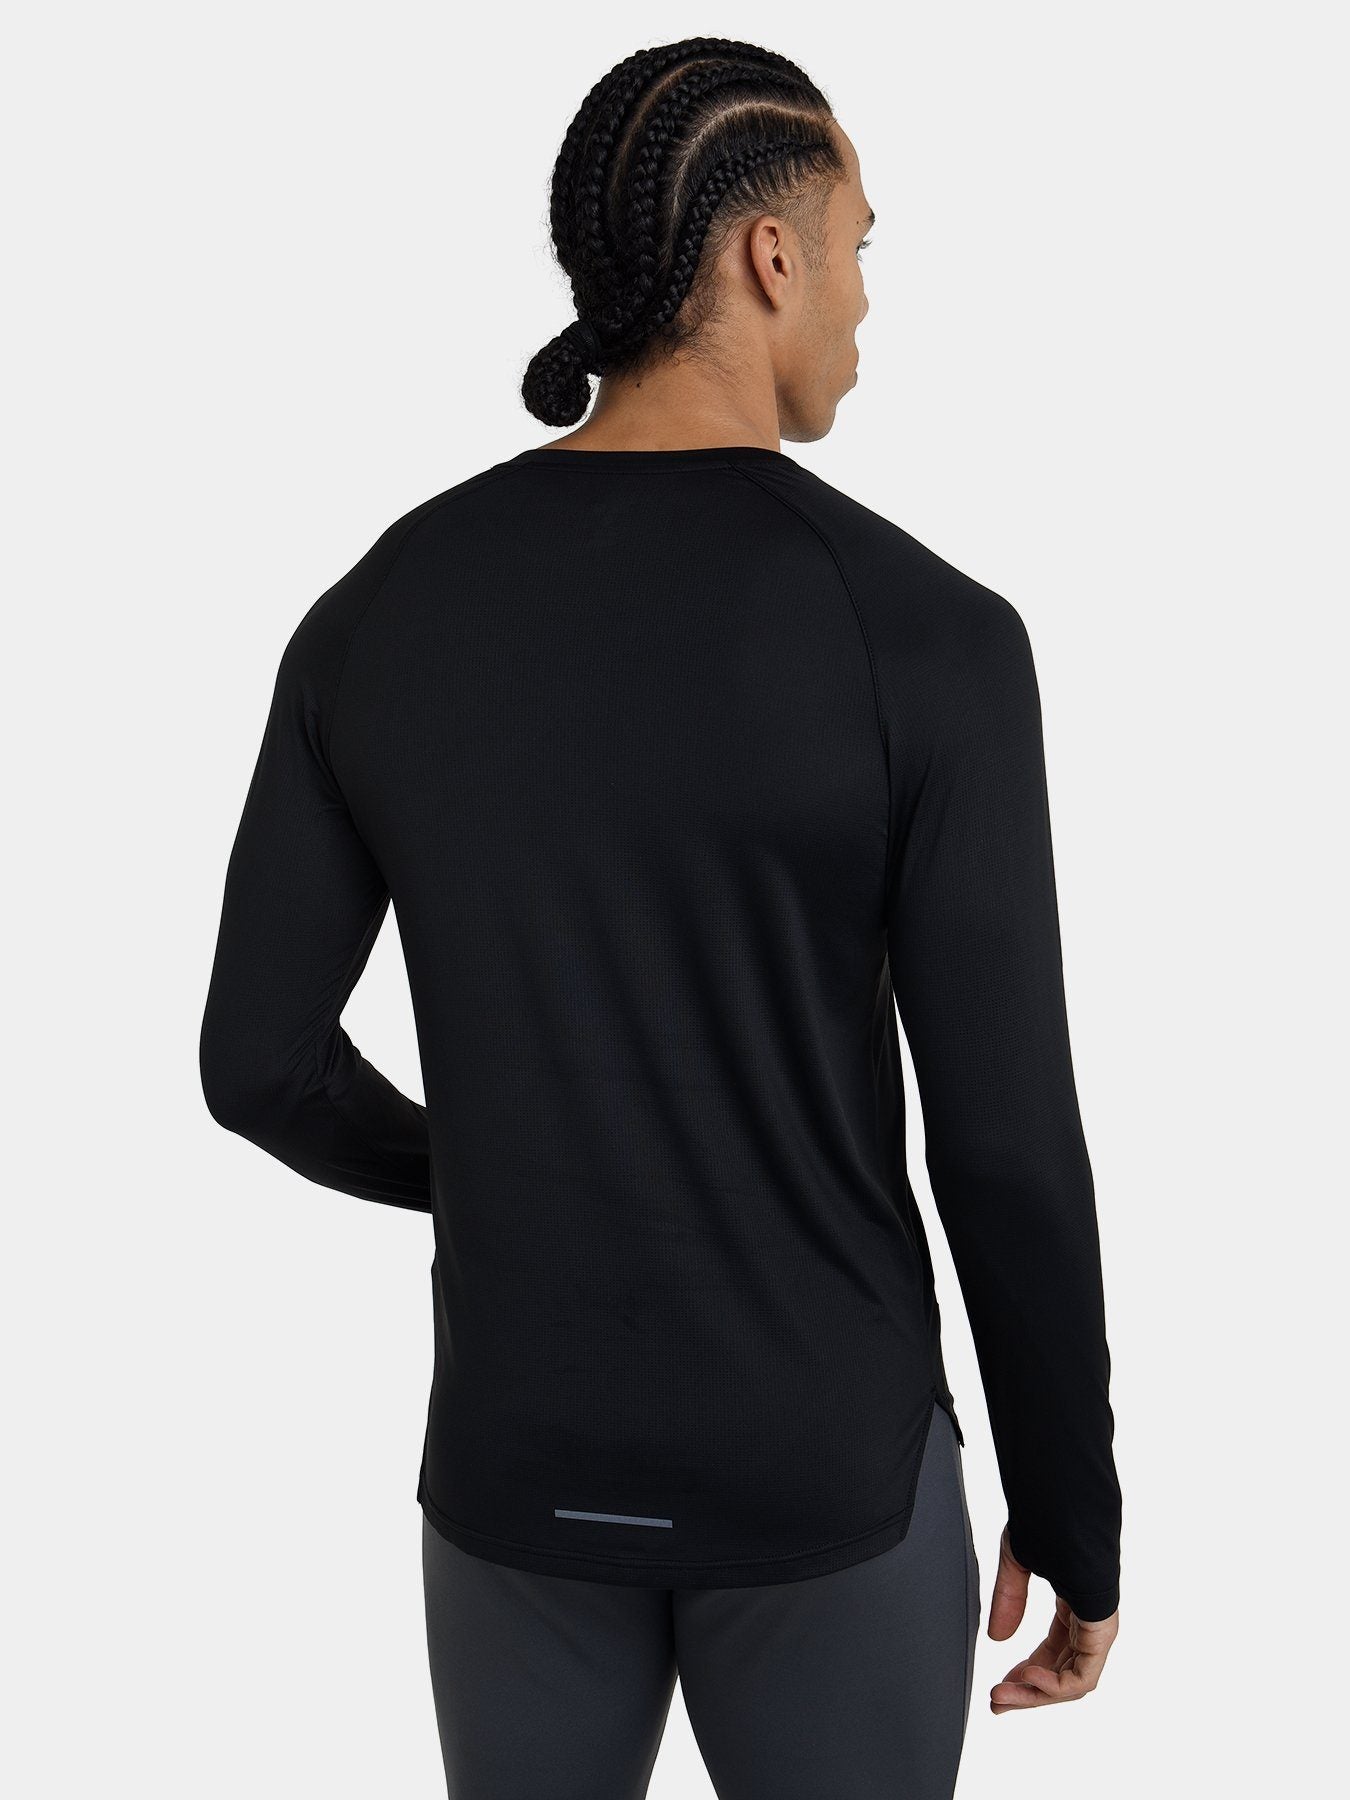 Saiyan Evolution' Long Sleeve Super Slim Fitted Compression Shirt -  Chameleon Black/Silver